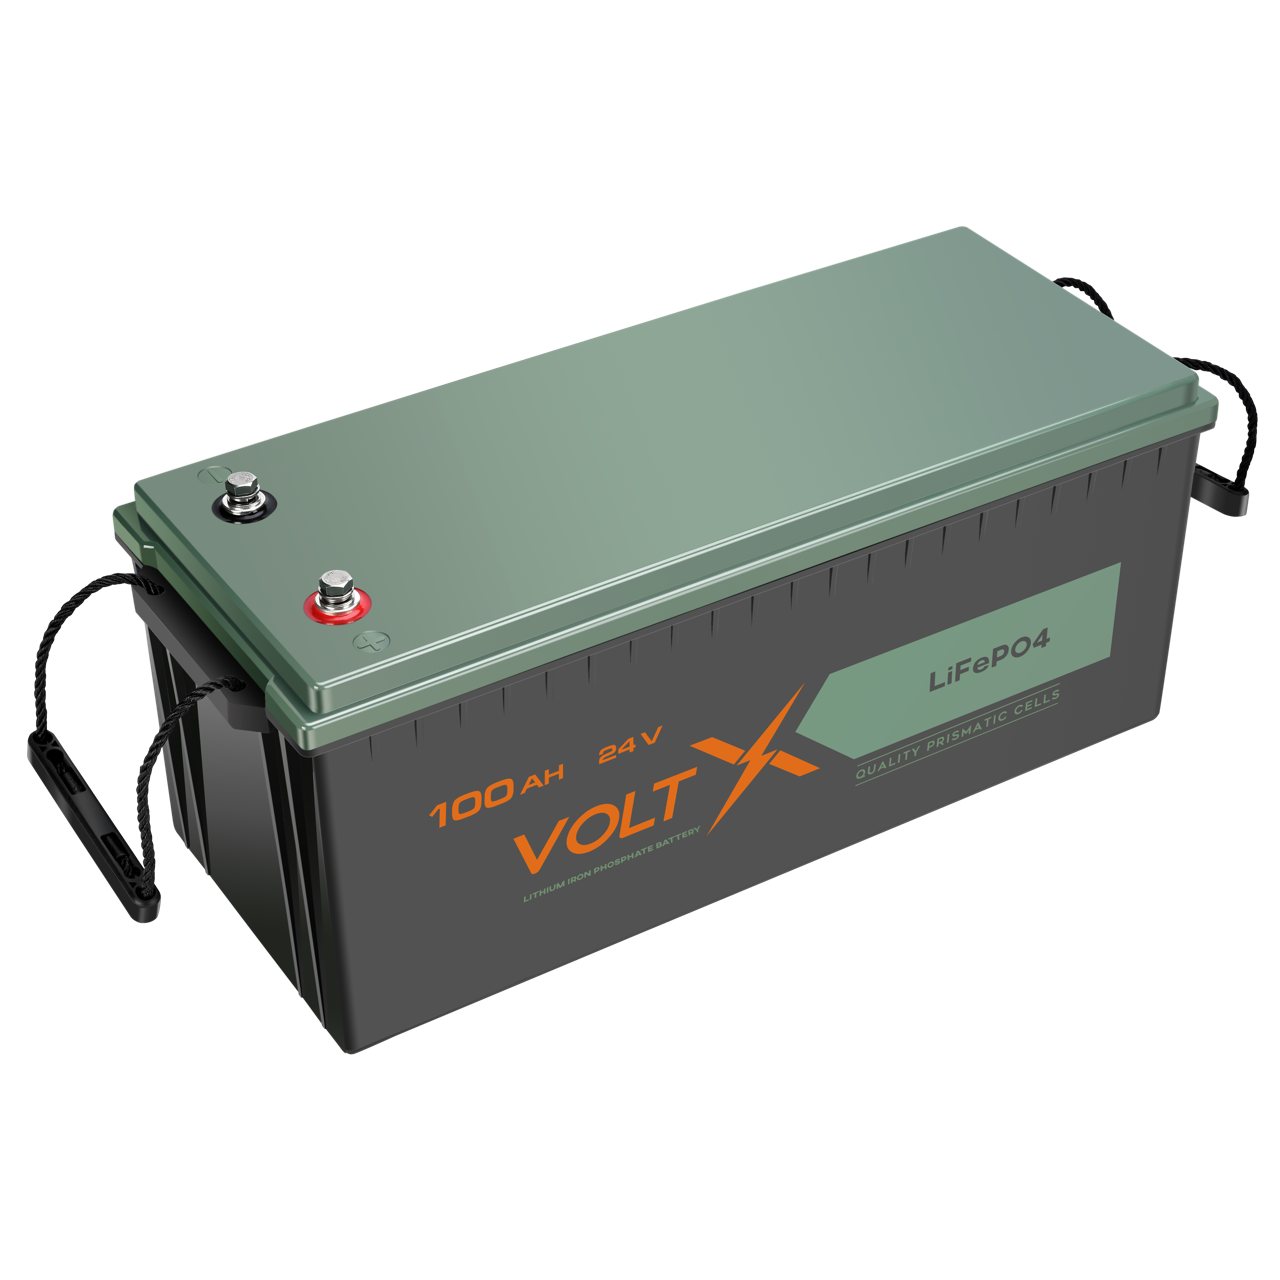 VoltX 24V 100Ah Basic